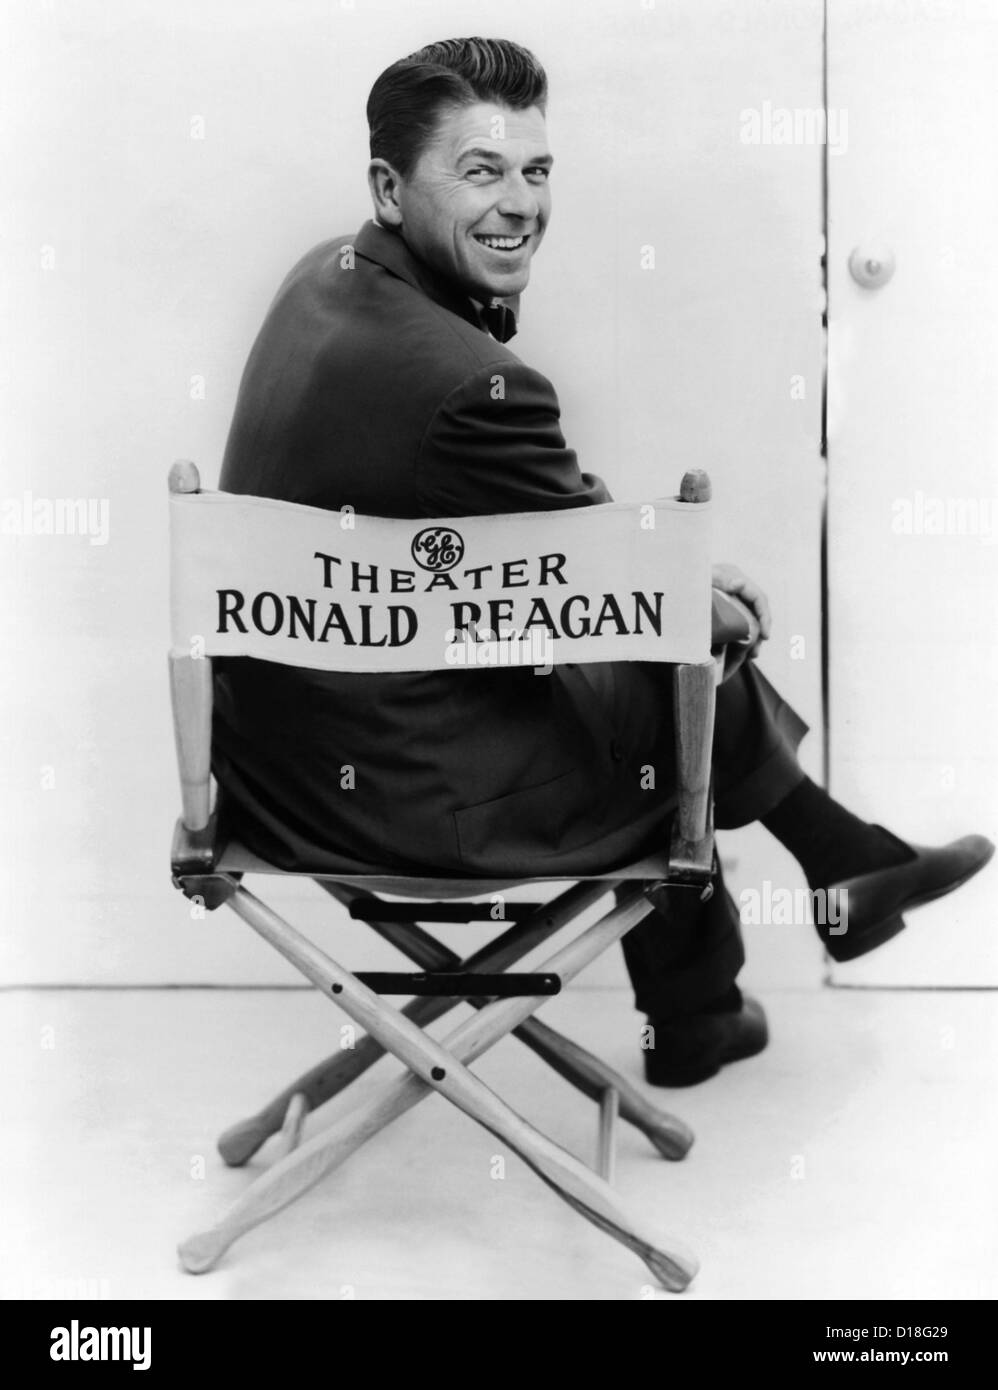 Ronald Reagan è stato ospite della General Electric Theatre sul CBS televisione dal 1954-1962. (CSU ALPHA 438) Archivi CSU/Everett Foto Stock